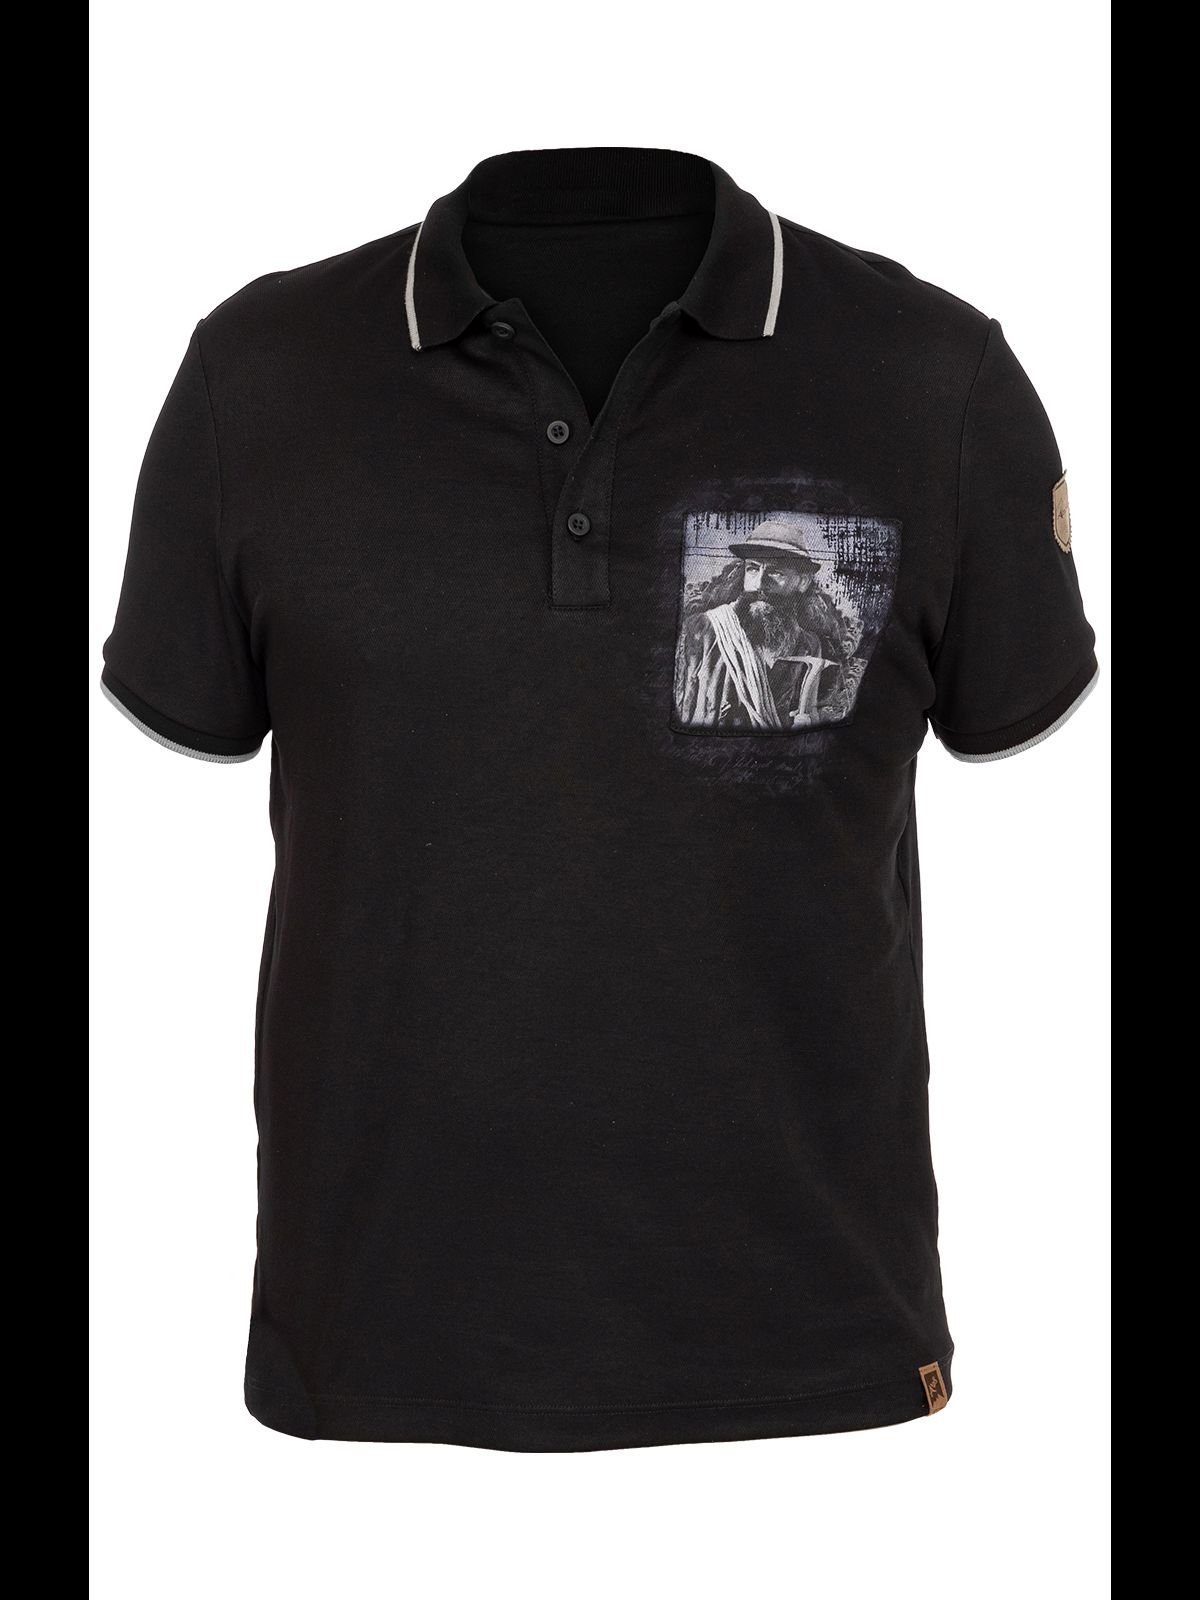 Almgwand Trachtenshirt T-Shirt PUTZENTALALM schwarz